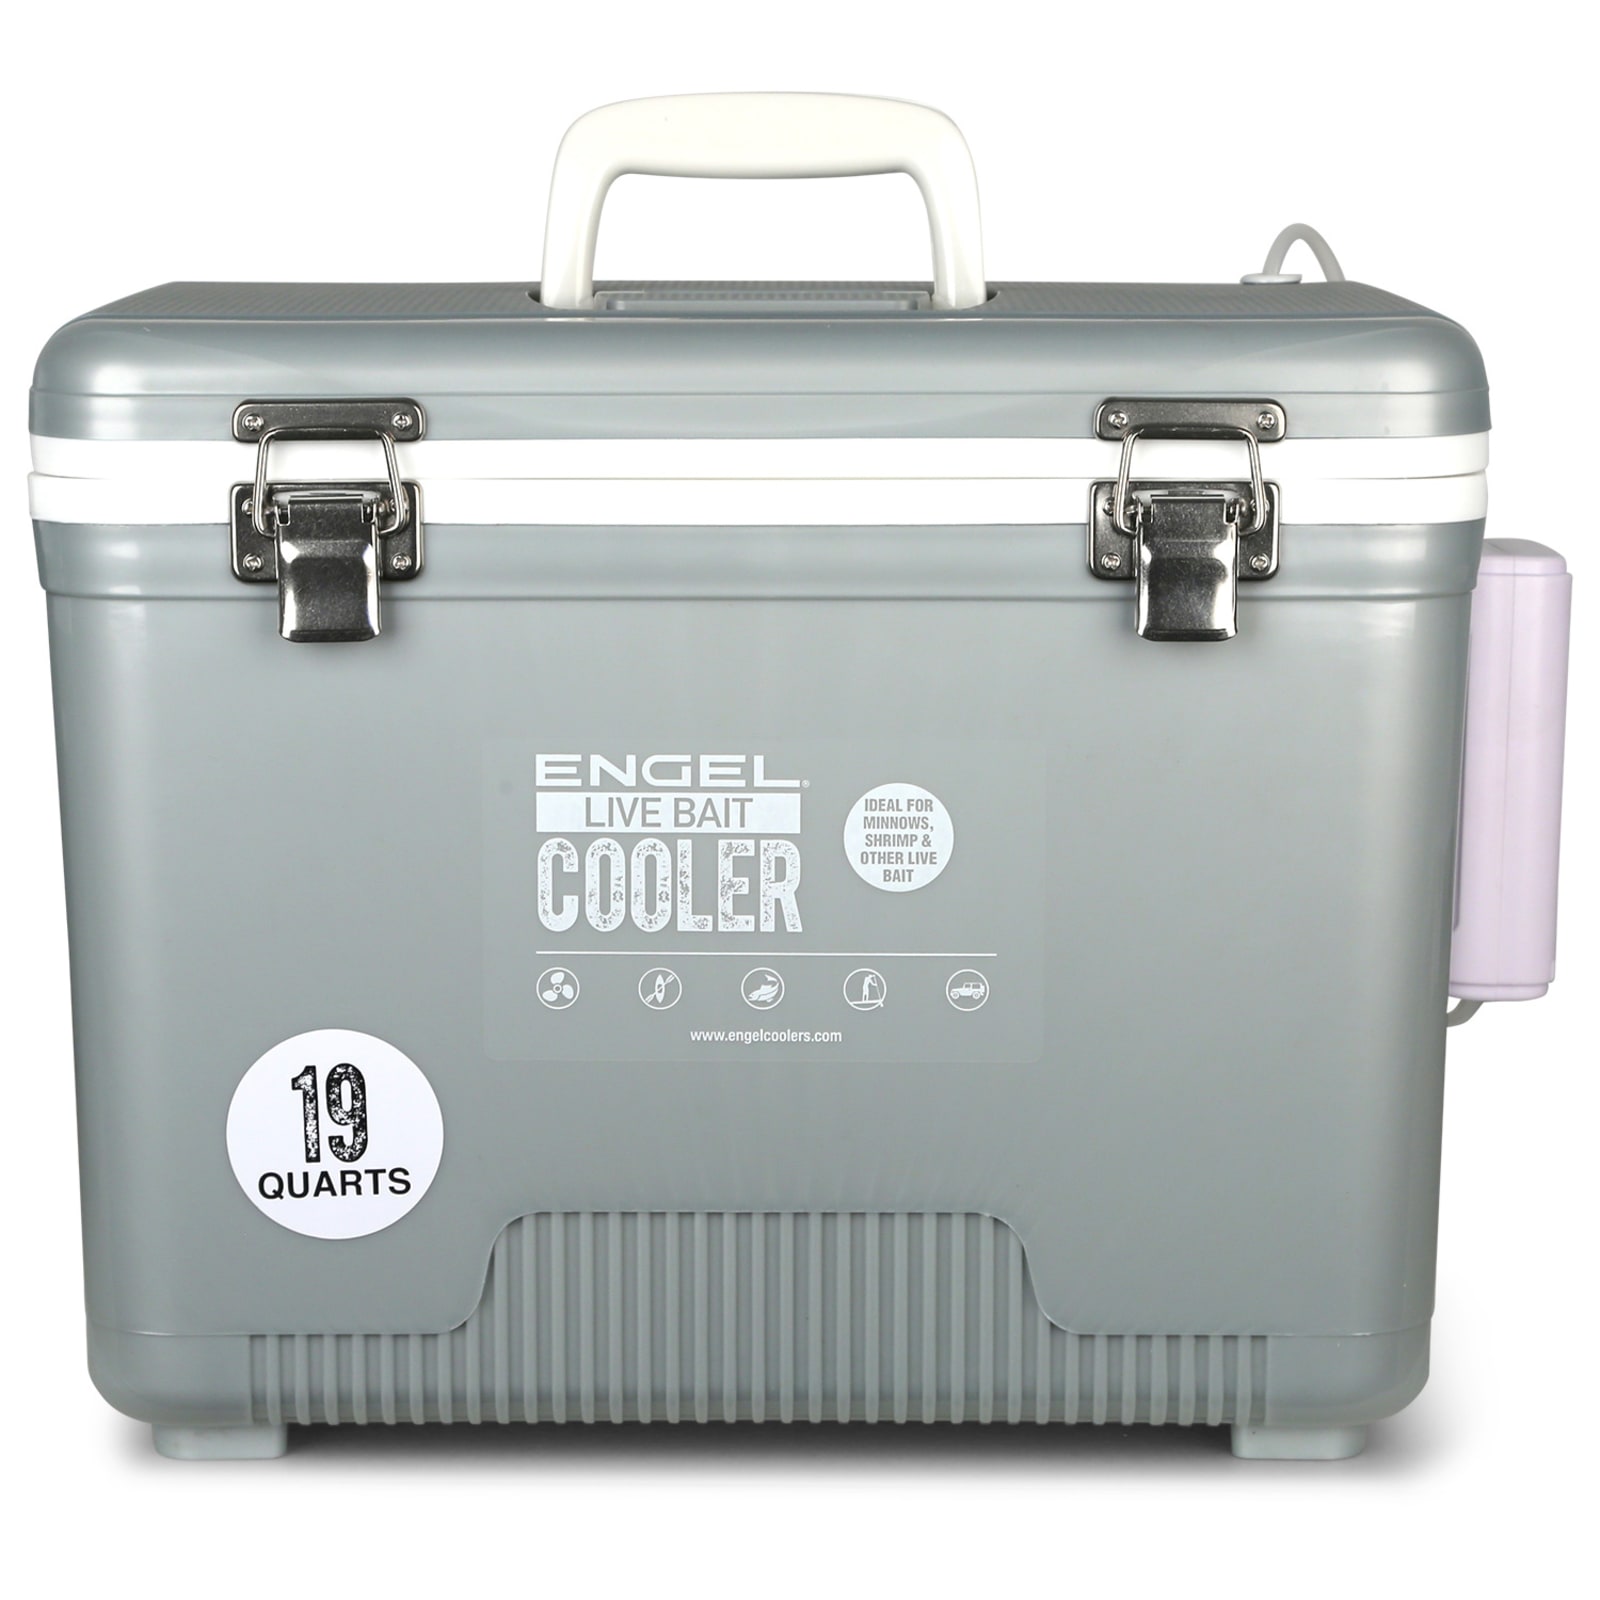 Pro Series Live Bait Cooler 19 Qt Silver at Fleet Farm